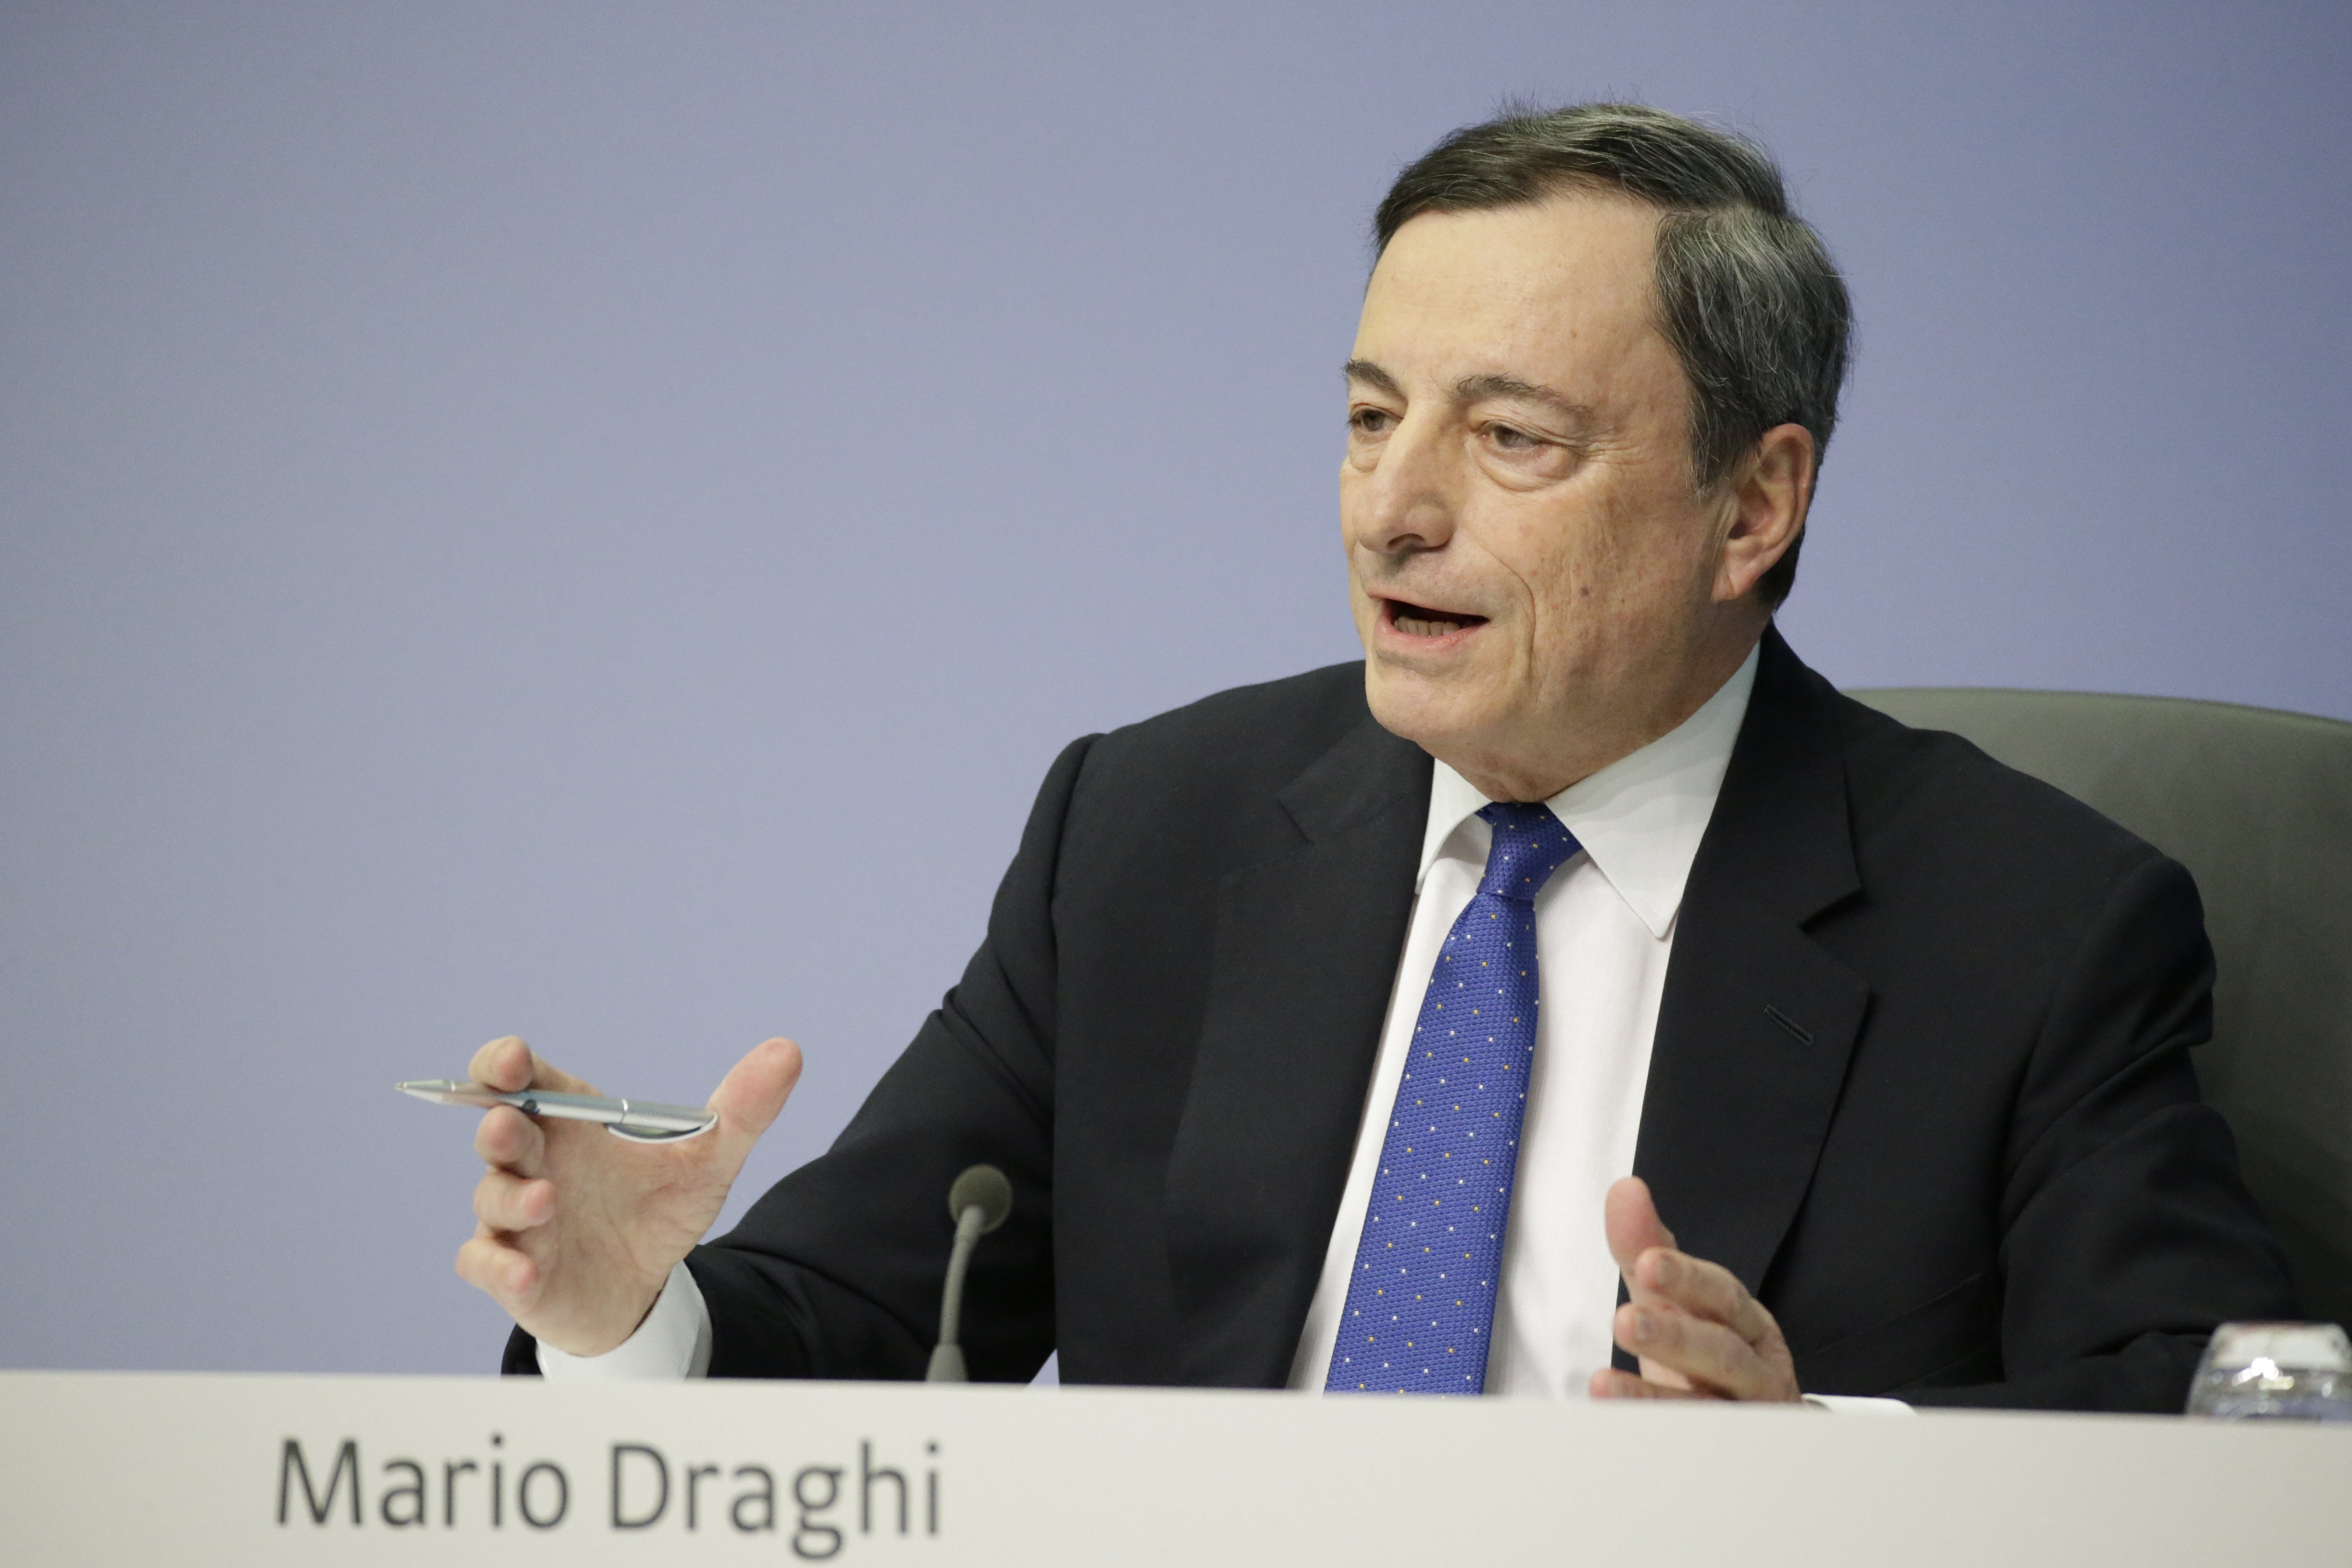 MArio Draghi - BCE - Banco Central Europeo